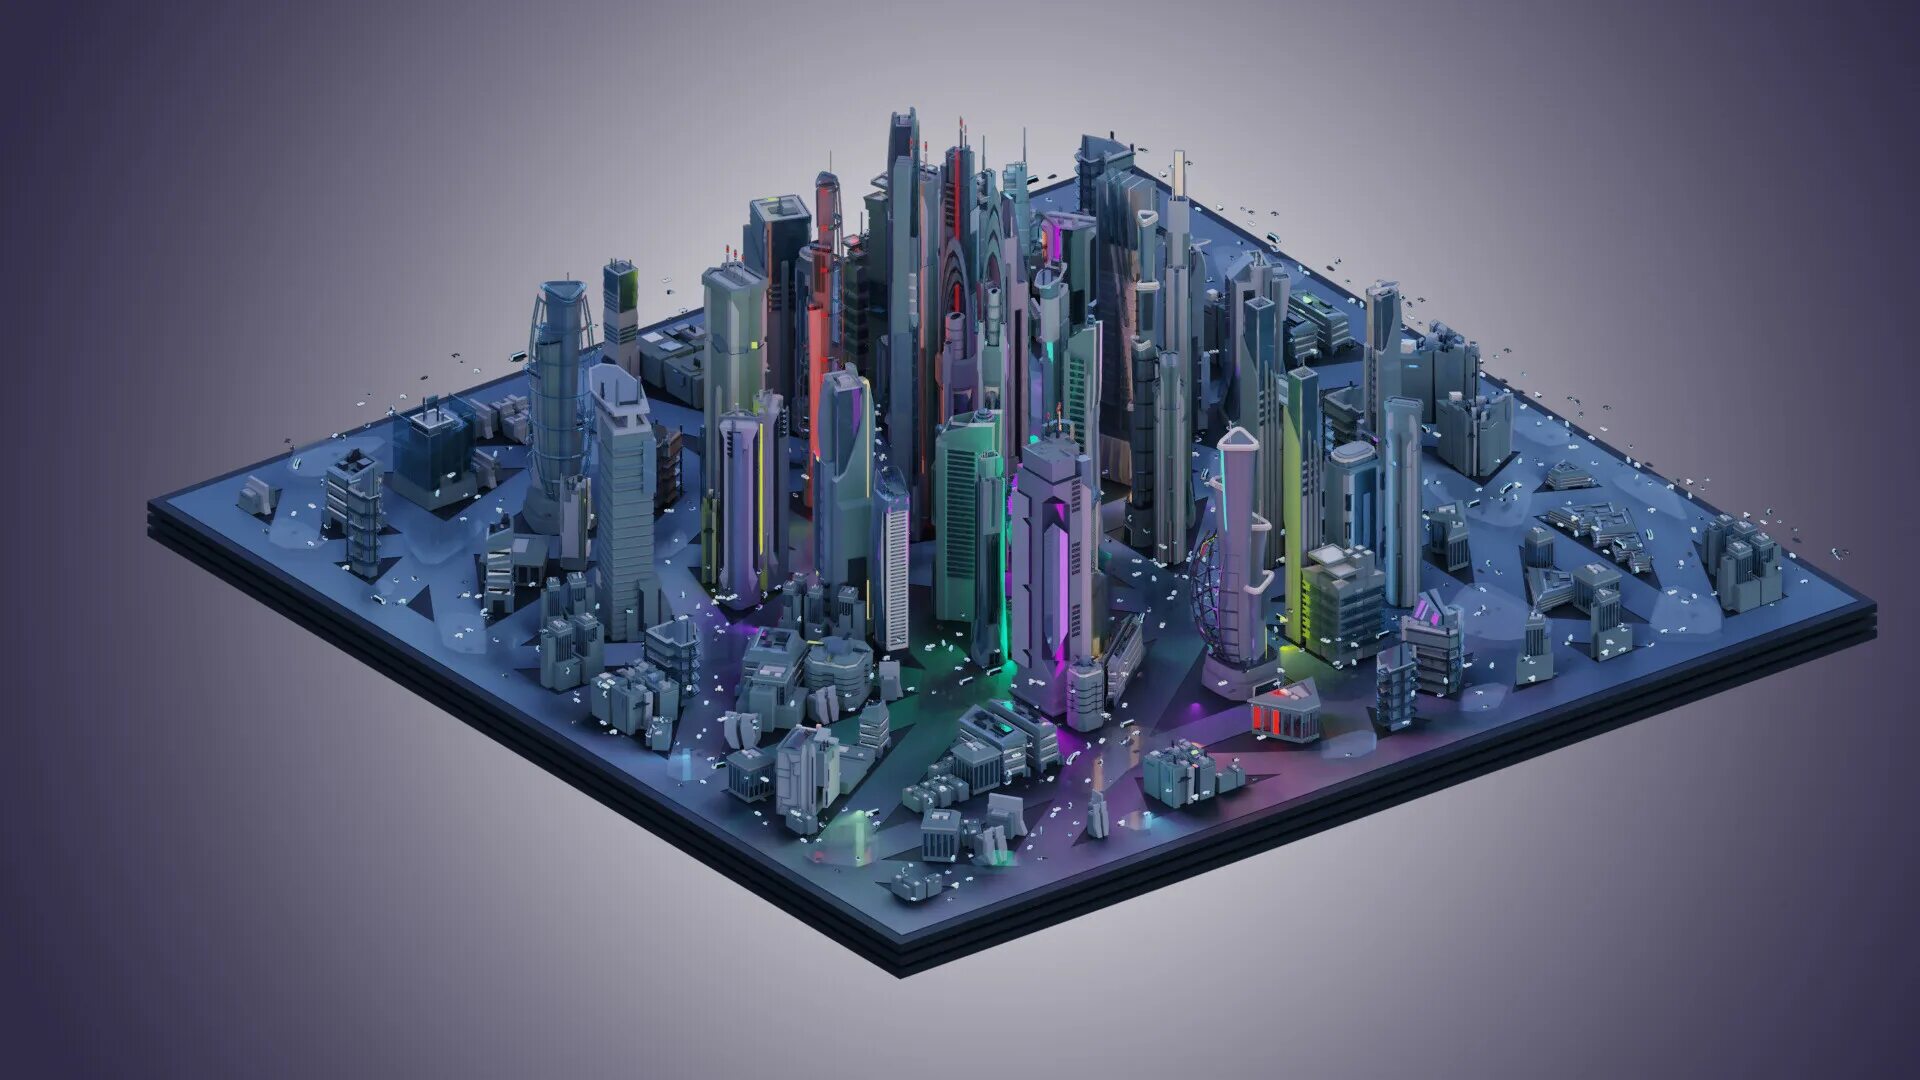 Scifi City архитектура 3d model лазер. 3д моделирование. Модель города будущего. Трехмерное моделирование. Создание сложной модели